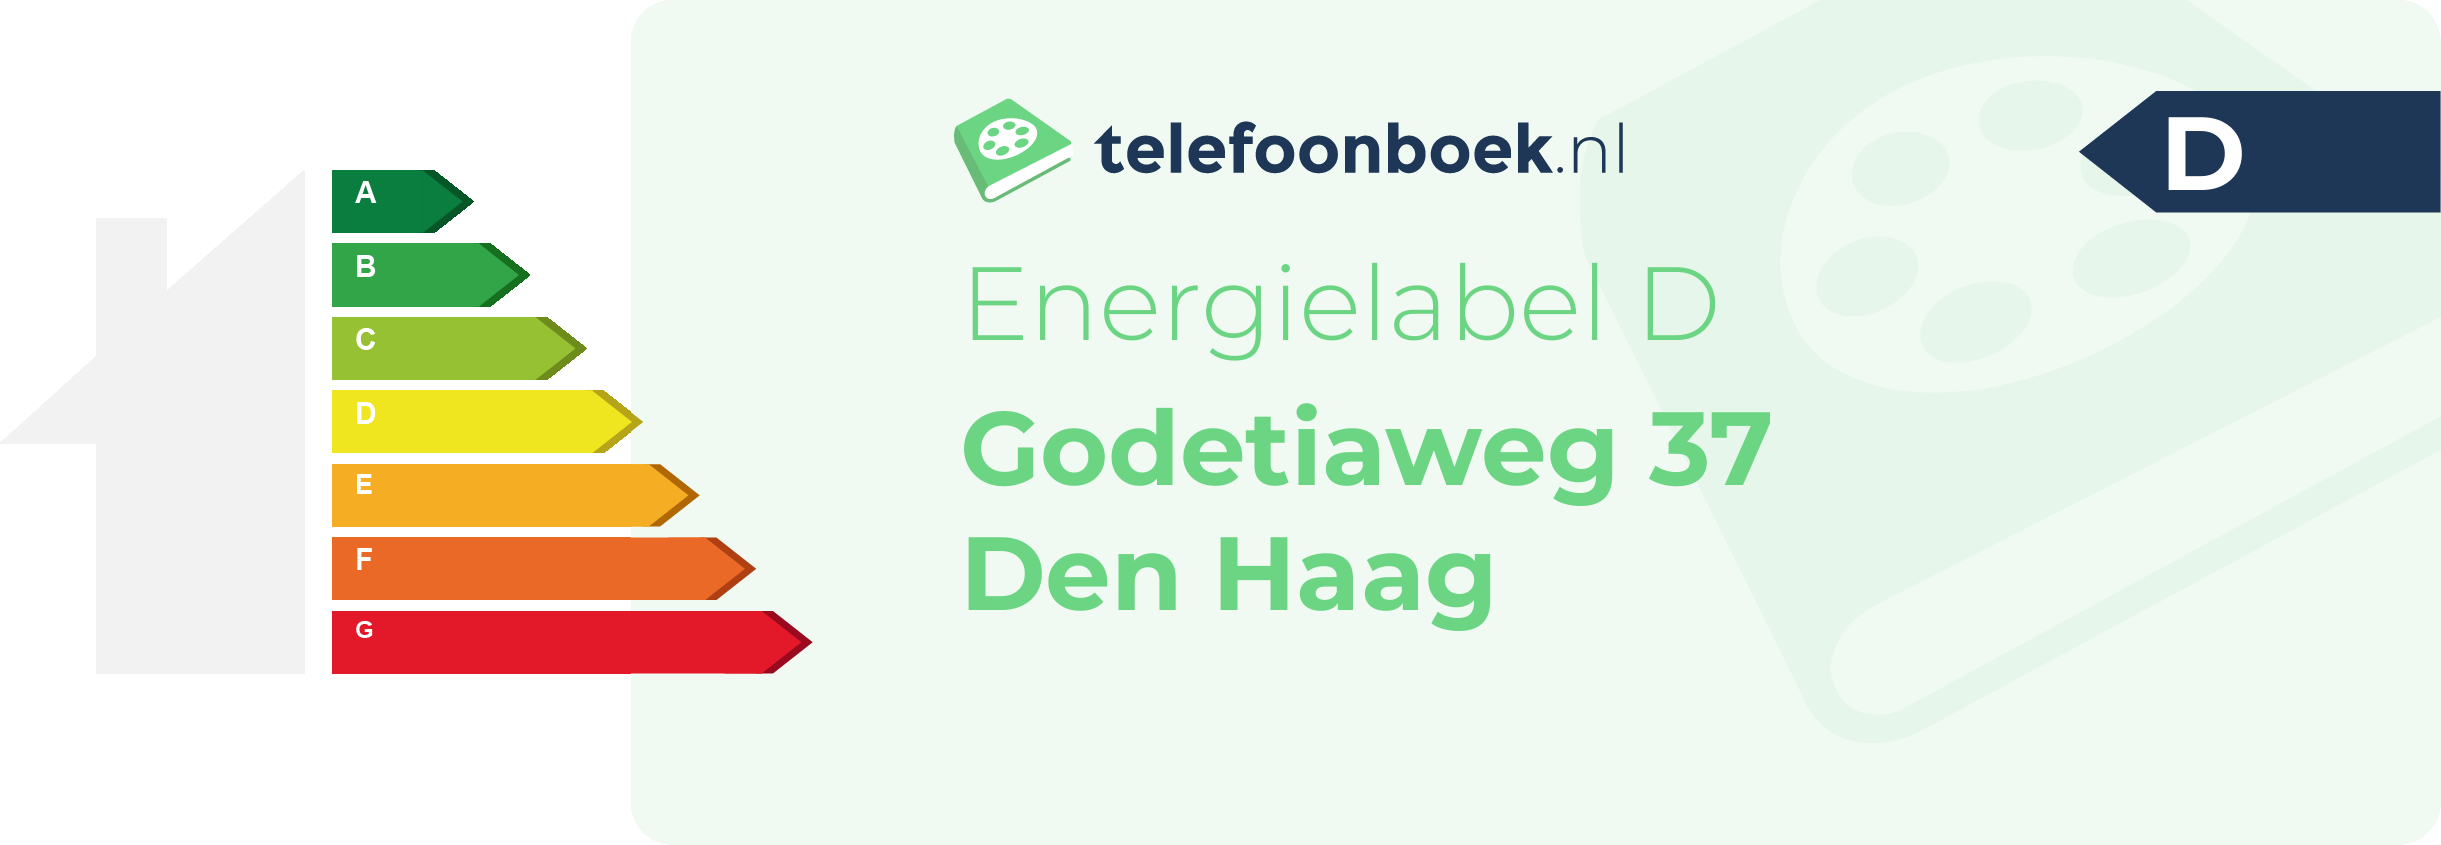 Energielabel Godetiaweg 37 Den Haag